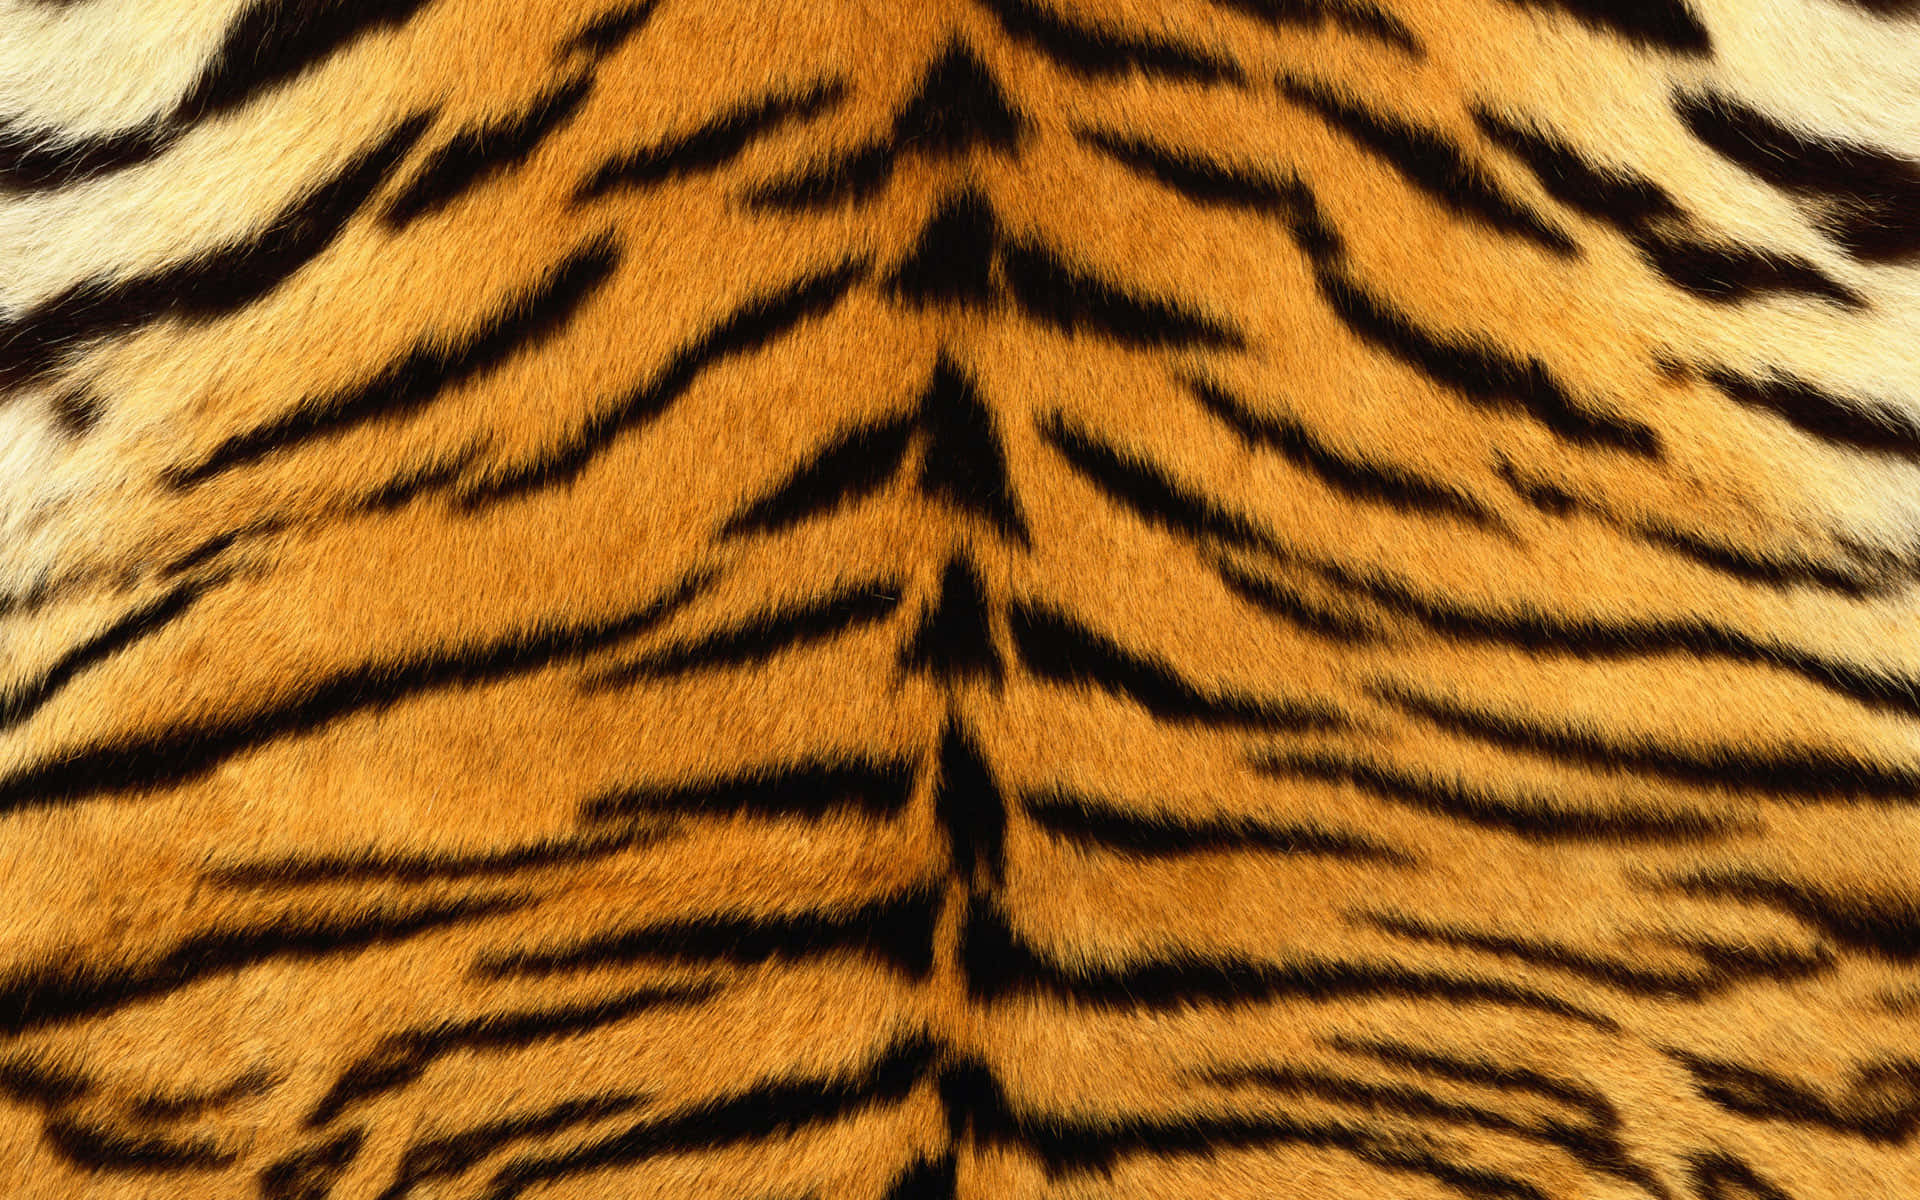 A Close Up Of A Tiger's Fur